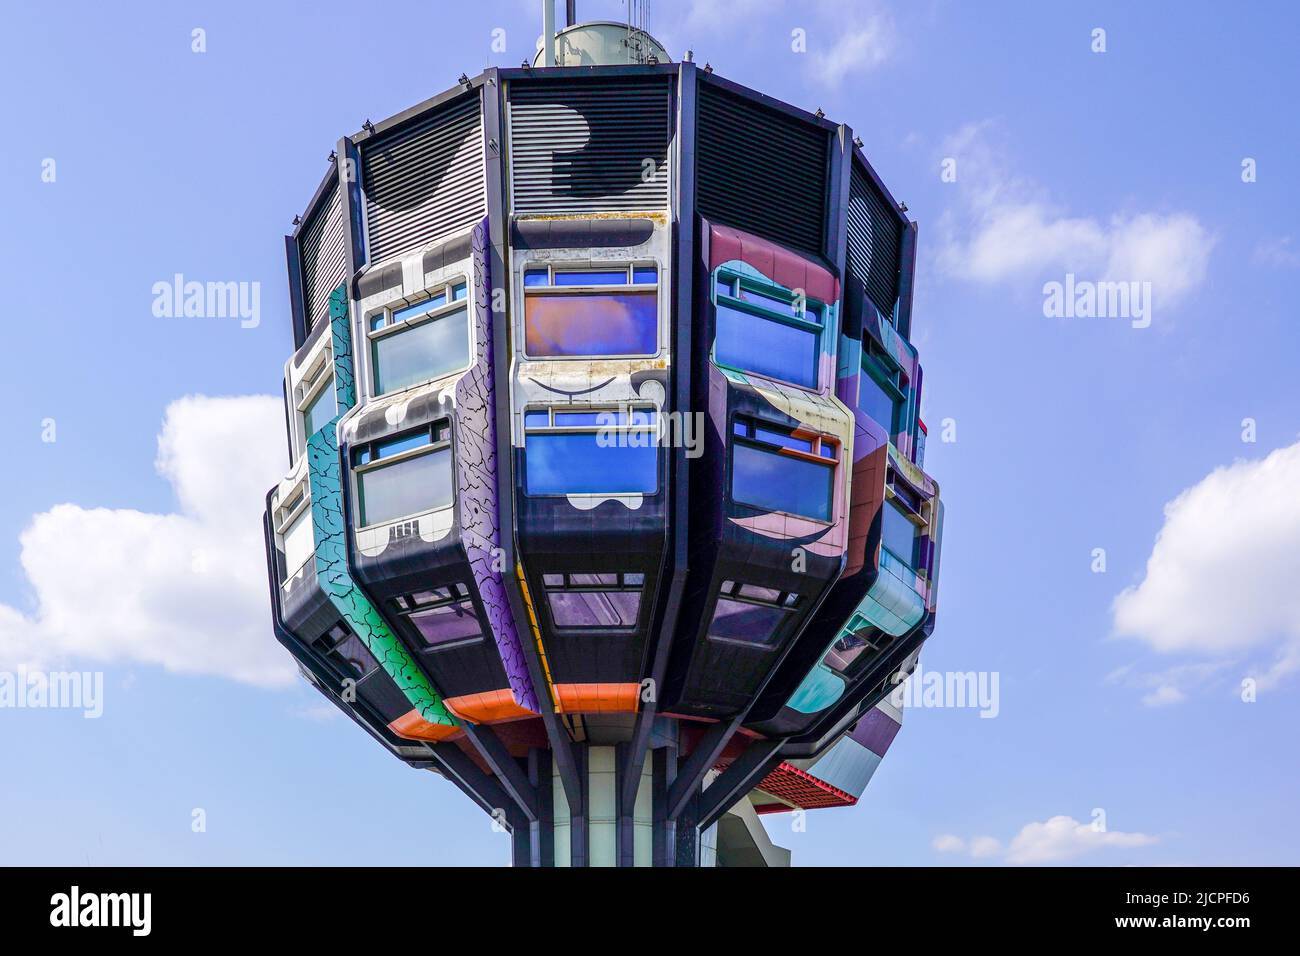 Il cosiddetto Bierpinsel è un edificio alto 47 metri situato nella futuristica architettura pop del 1970s nel quartiere Steglitz di Berlino. Foto Stock